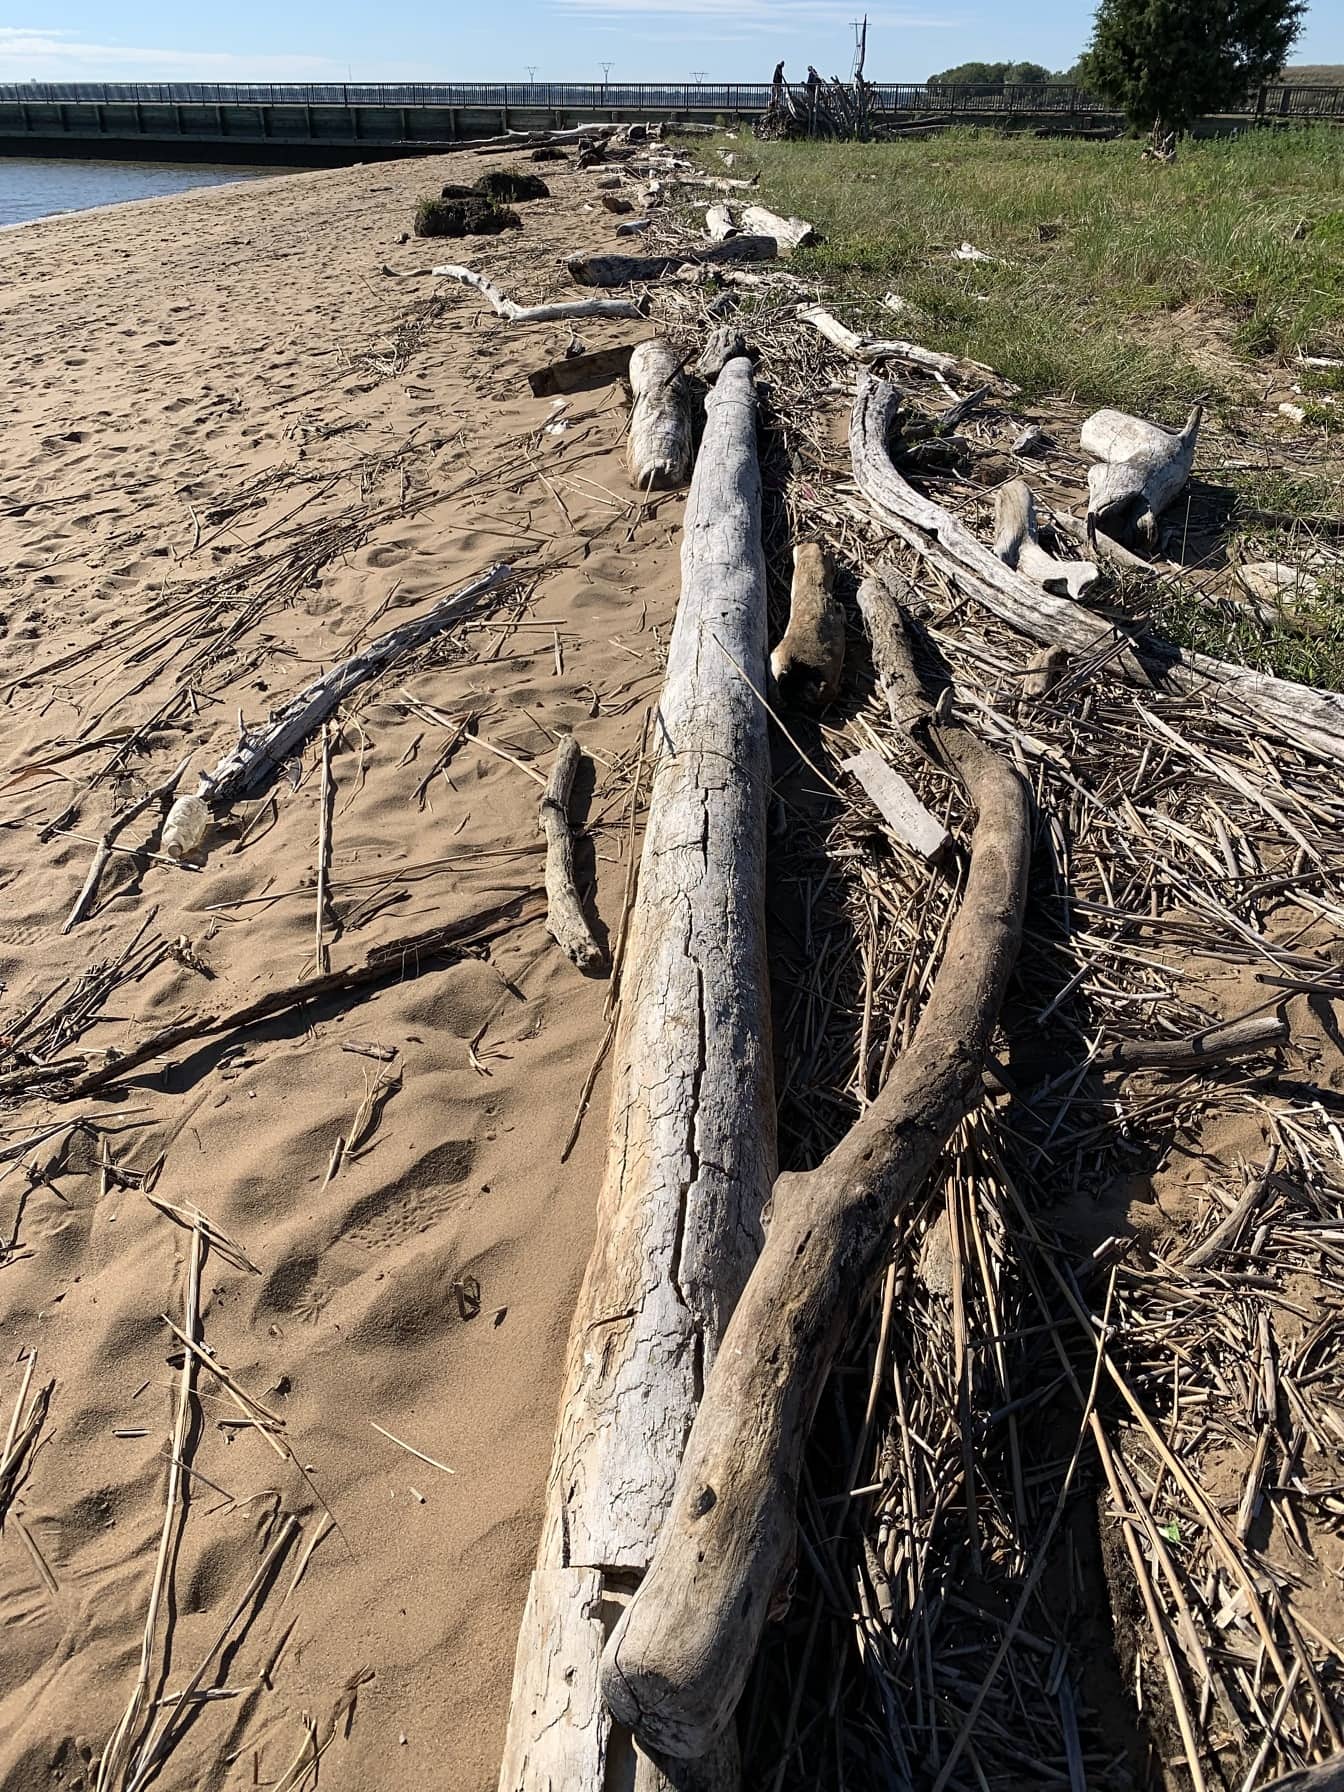 特拉华州海滩浮木和新泽西州莫特堡州立公园的碎片